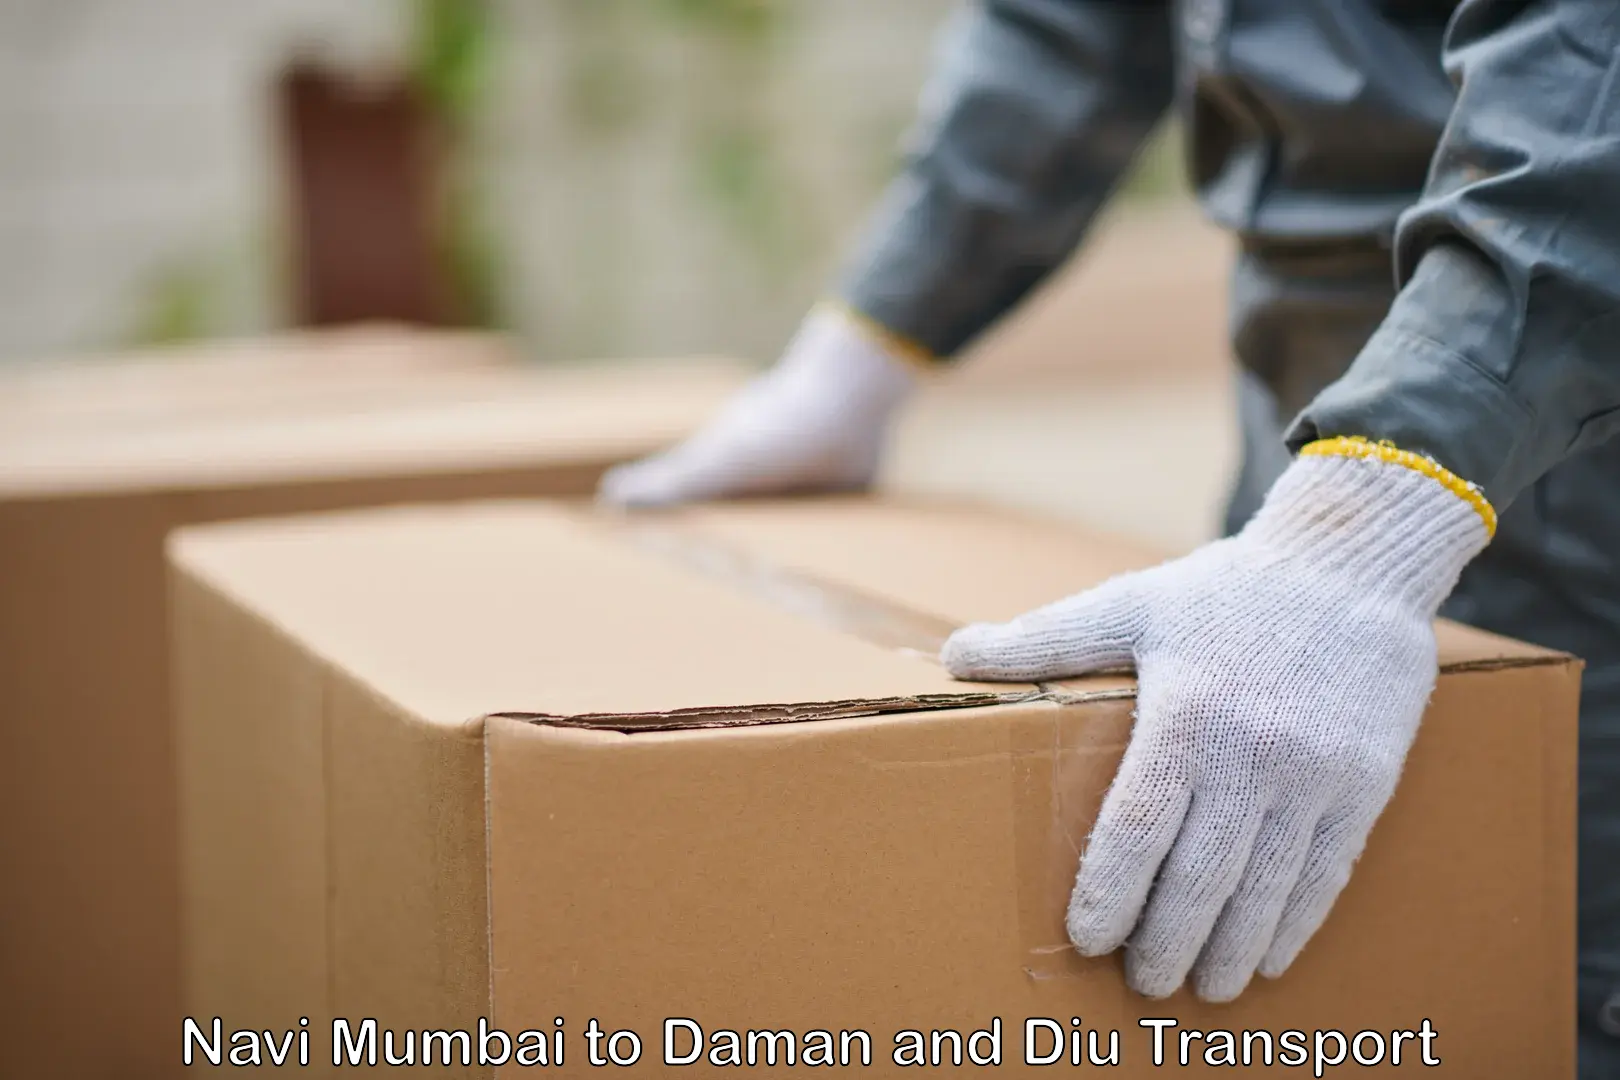 Daily parcel service transport Navi Mumbai to Daman and Diu